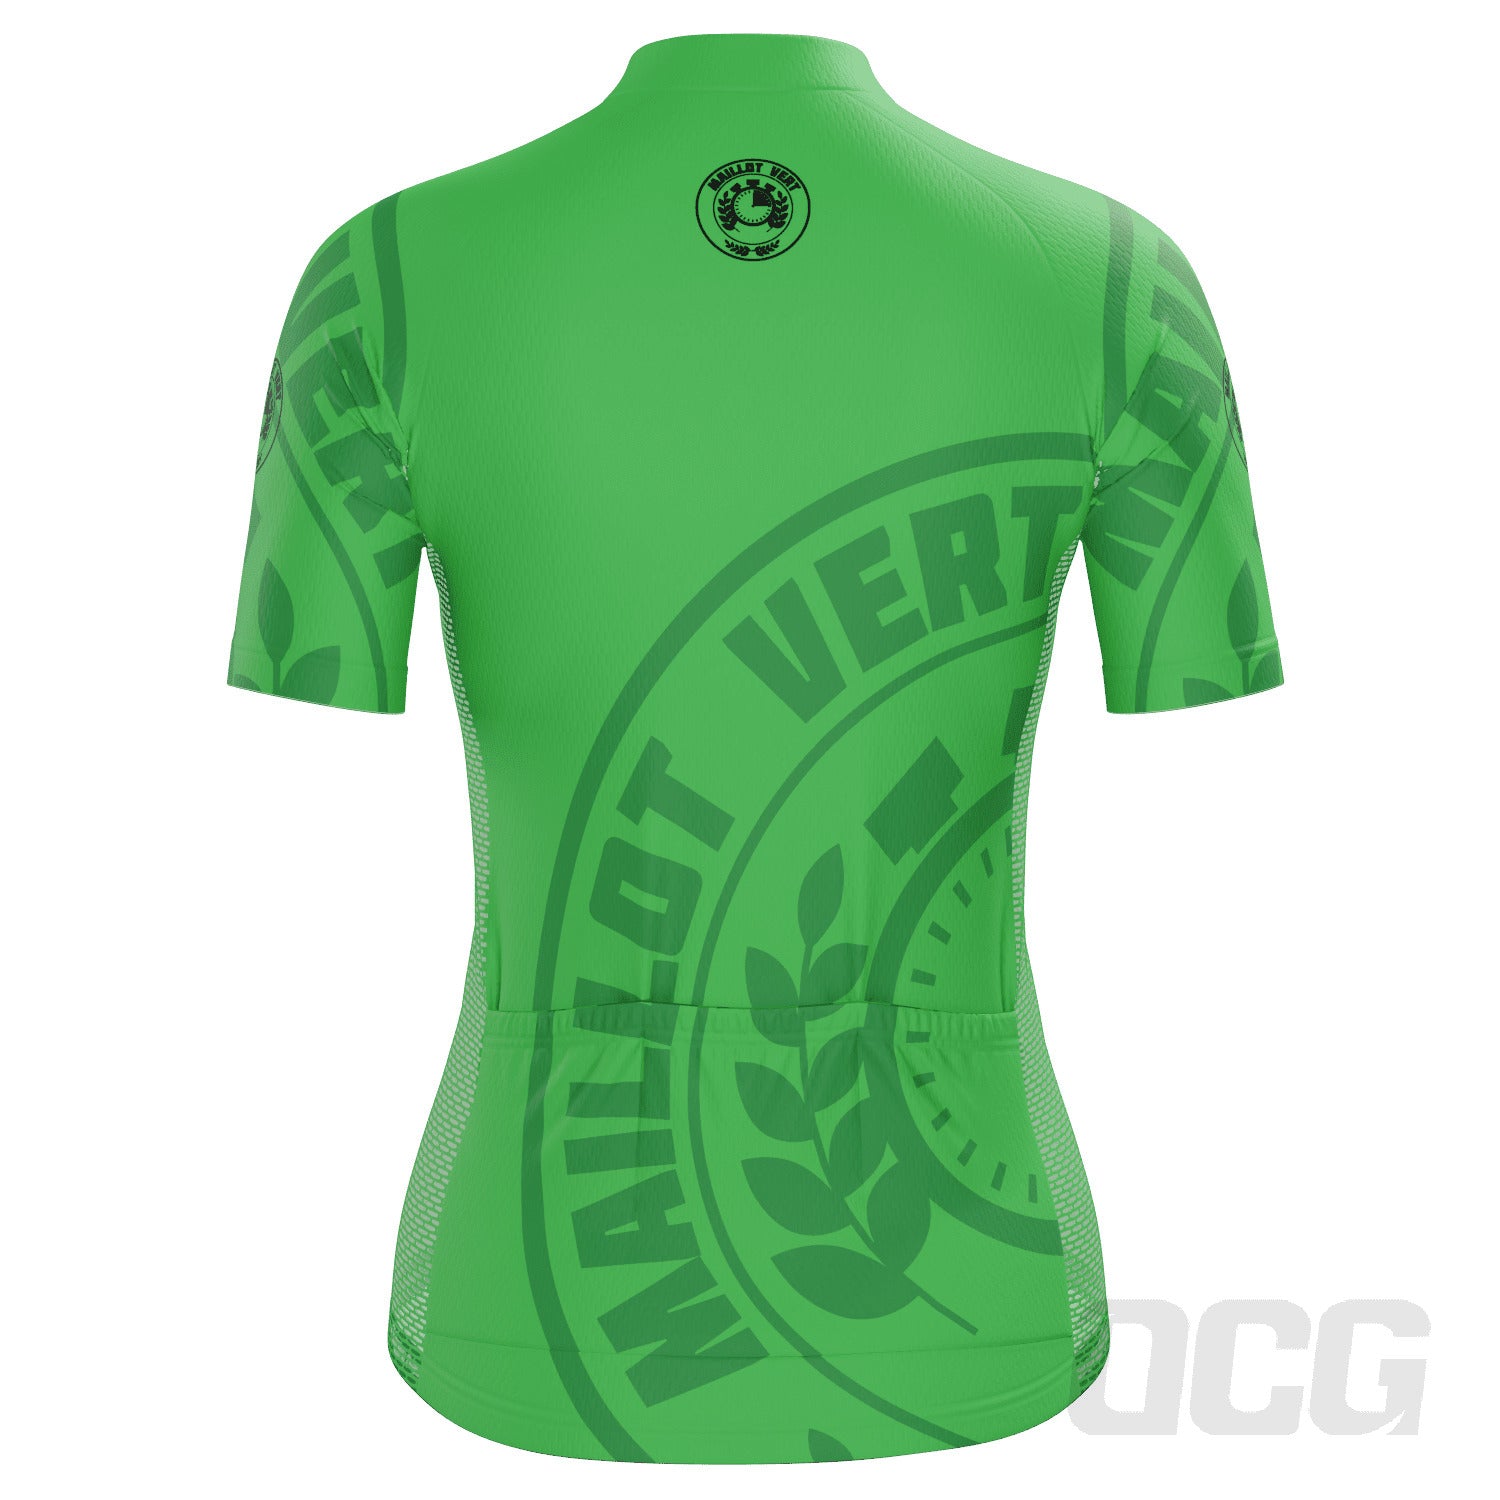 Women's Tour de France Green Sprinters Maillot Vert Short Sleeve Cycling Jersey